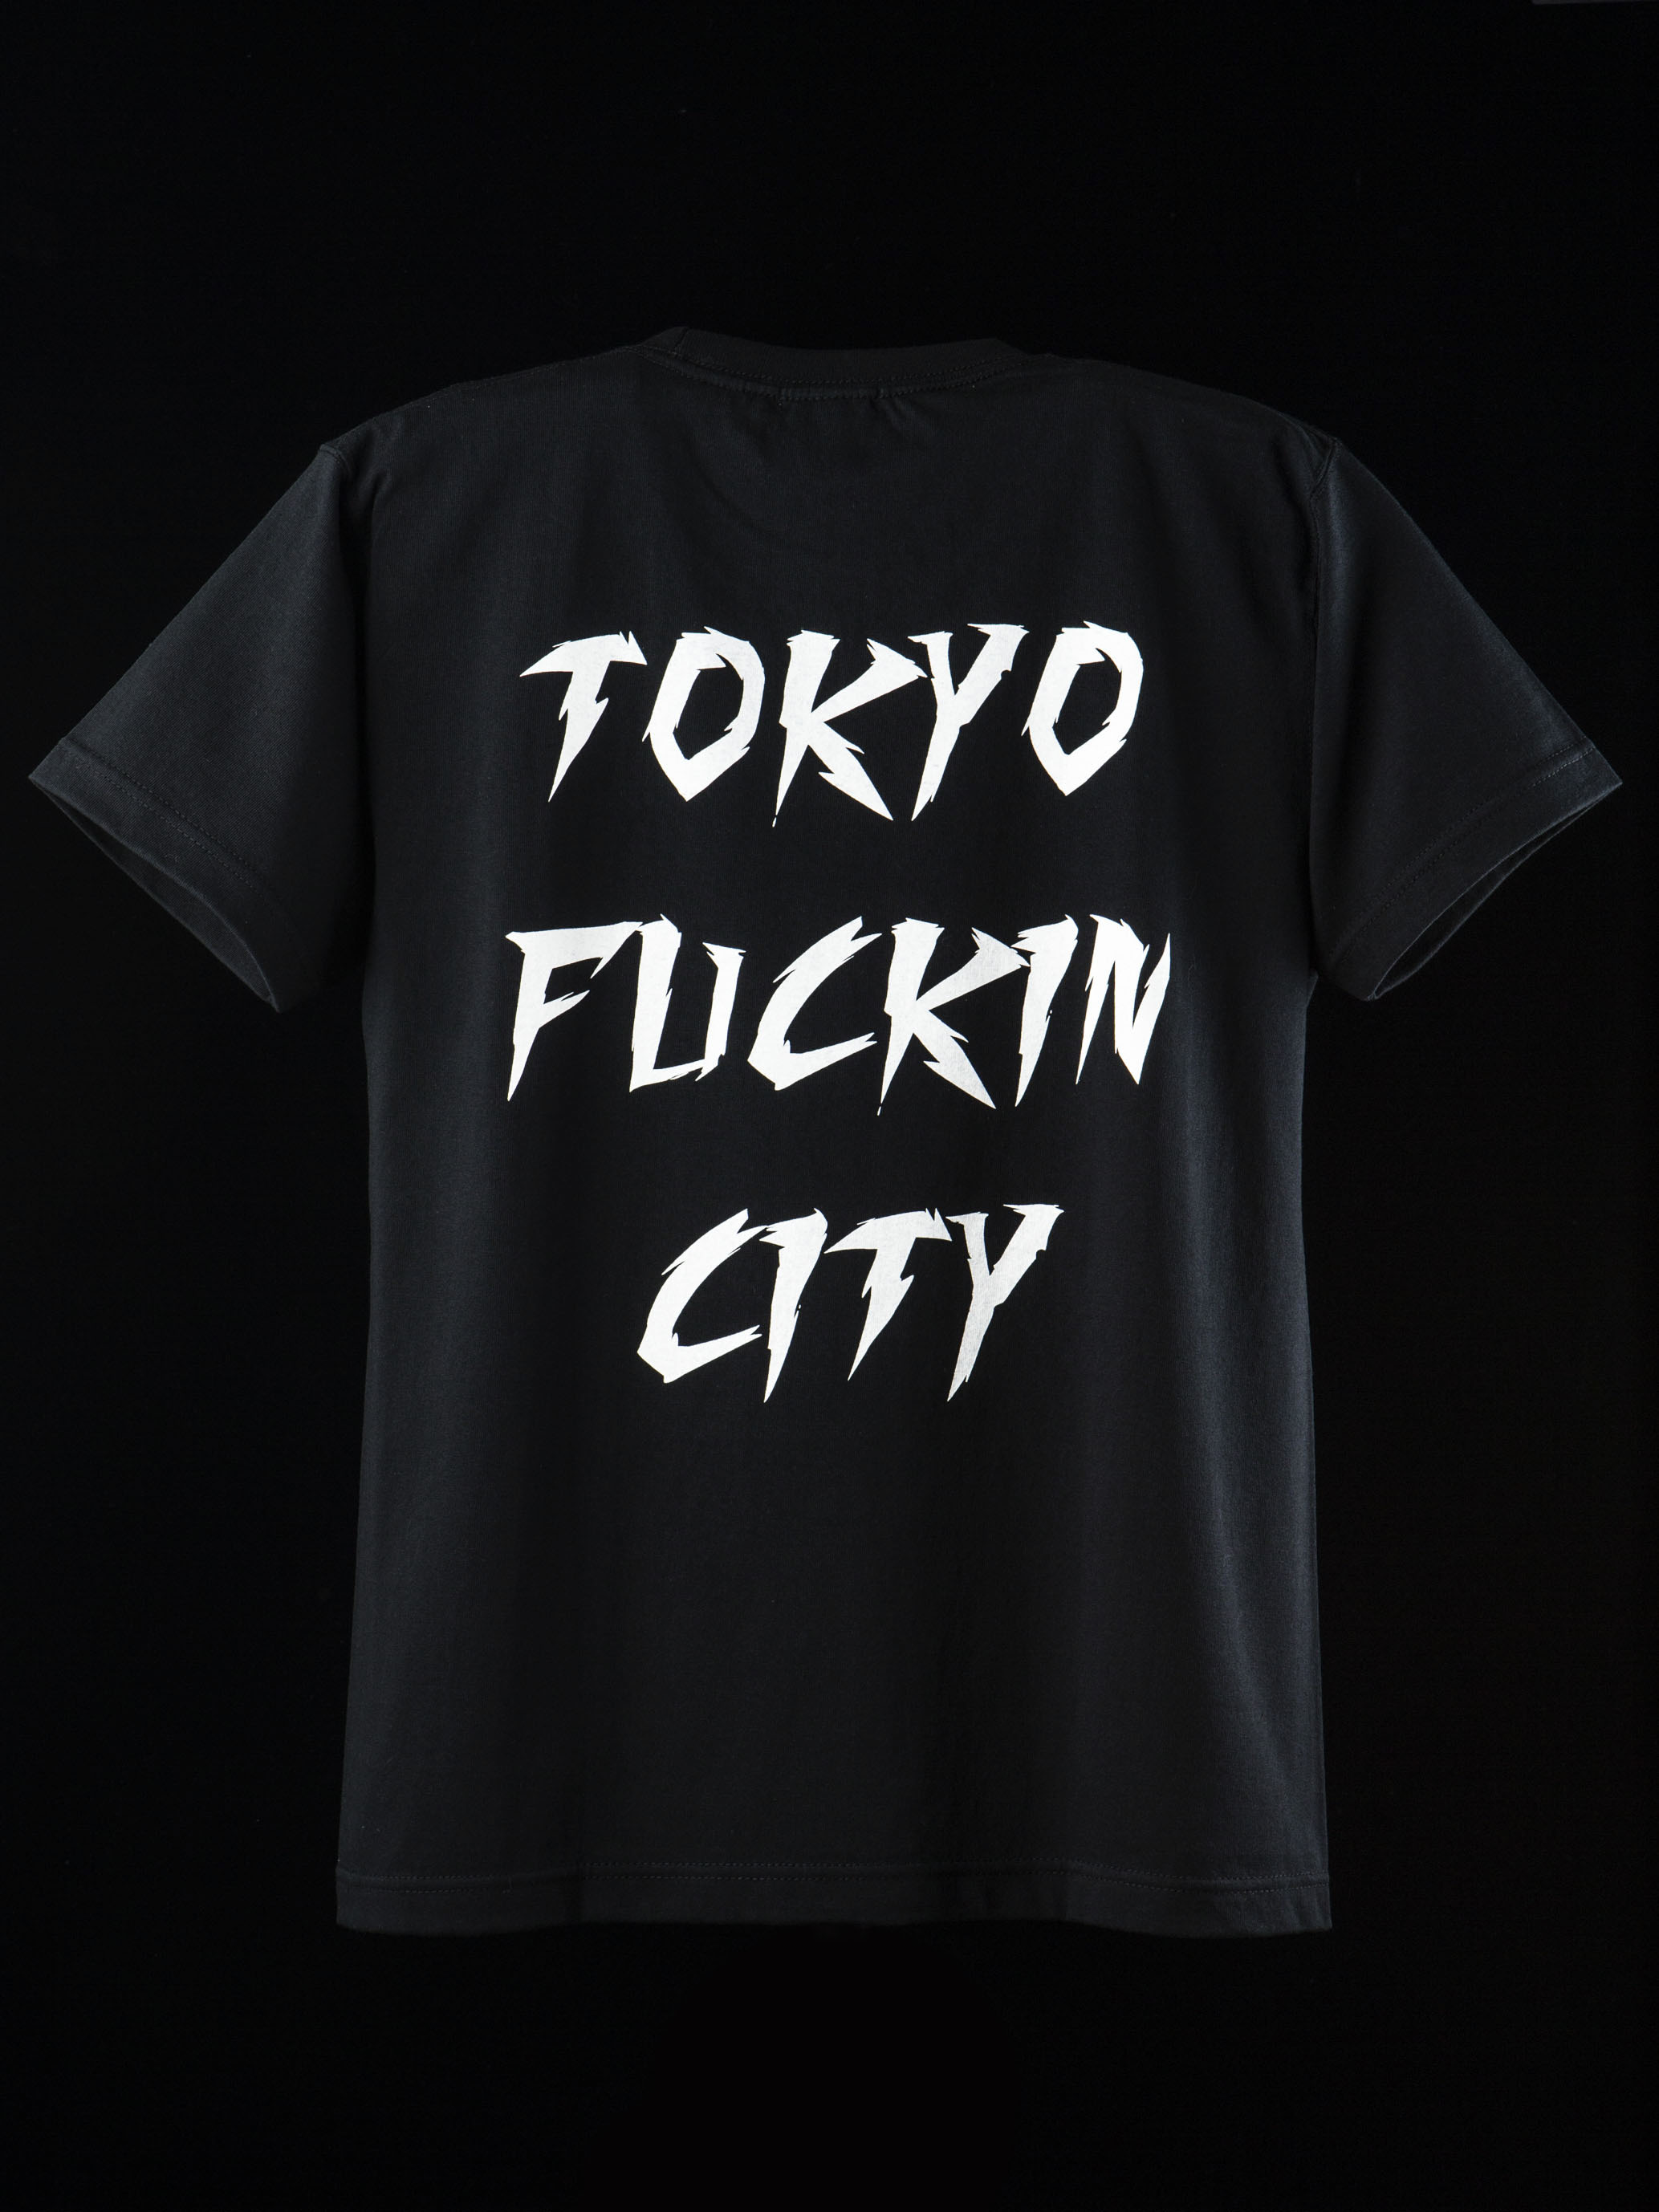 新 TOKYO FUCKIN CITY TeeとFUCK THE POLICE Teeアップ